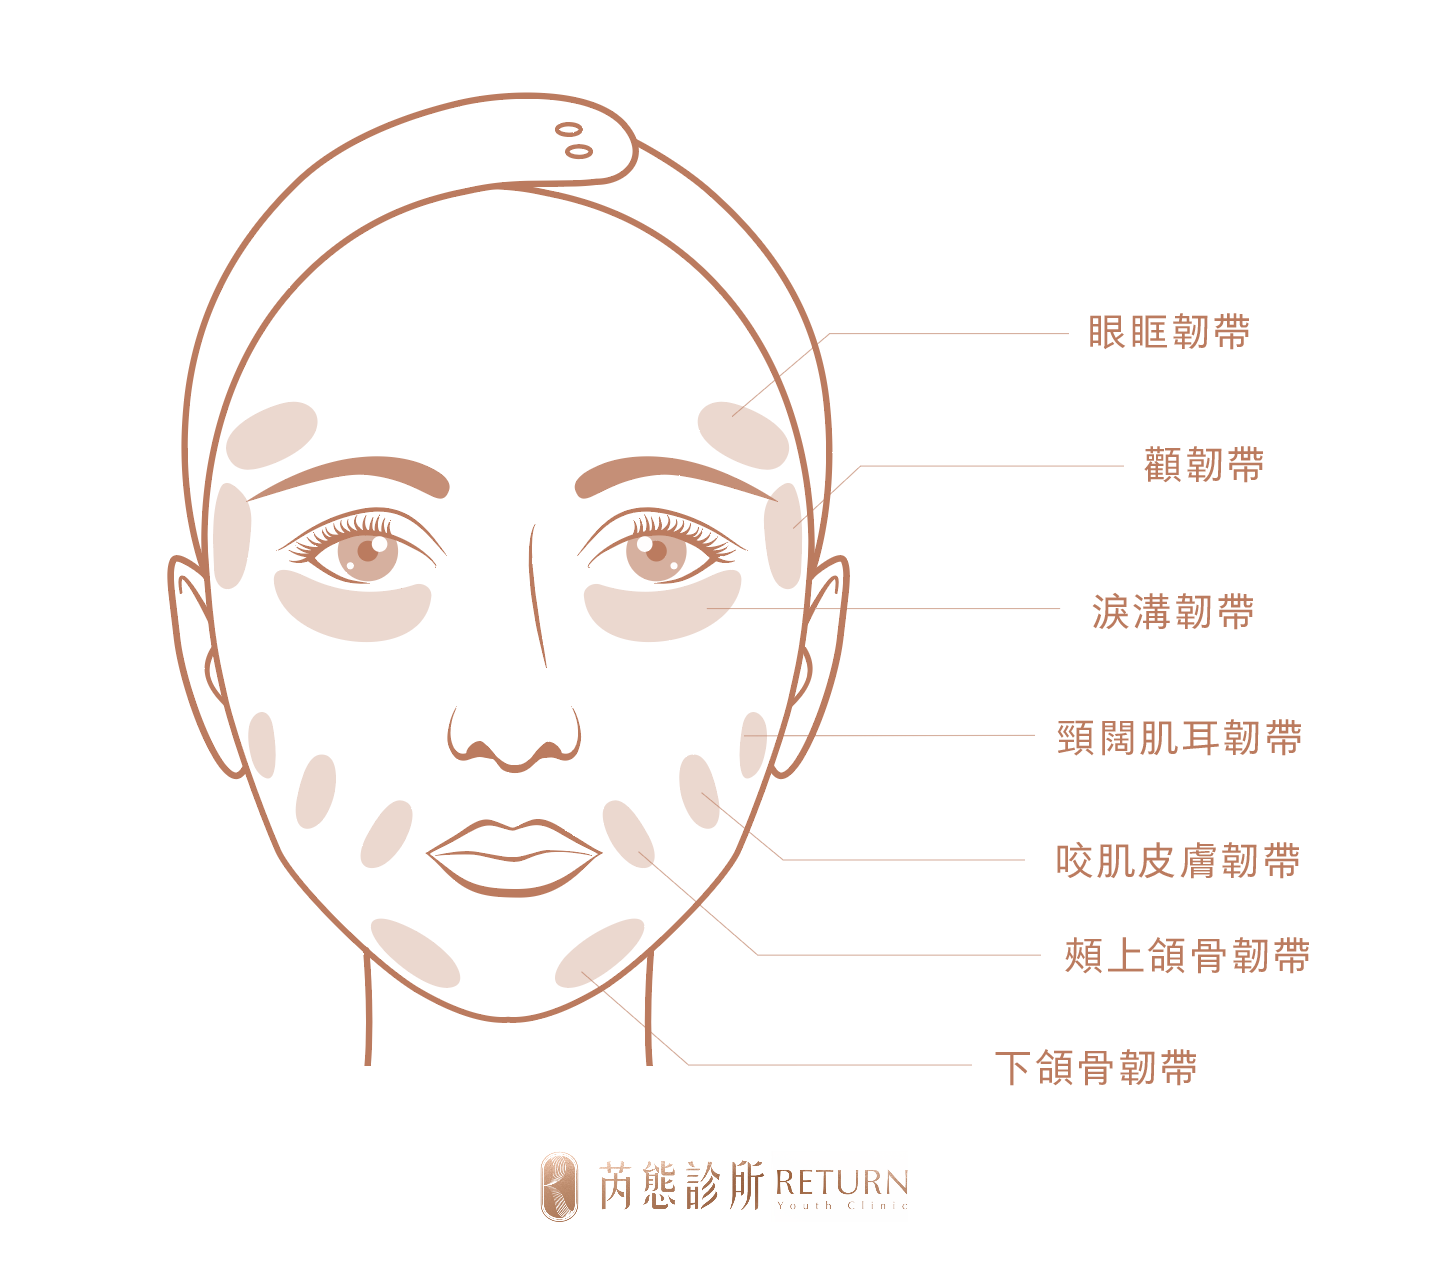 ▲臉部真性韌帶分布圖，需依專業醫師判斷評估熱能堆疊部位，由內而外緊實肌底。